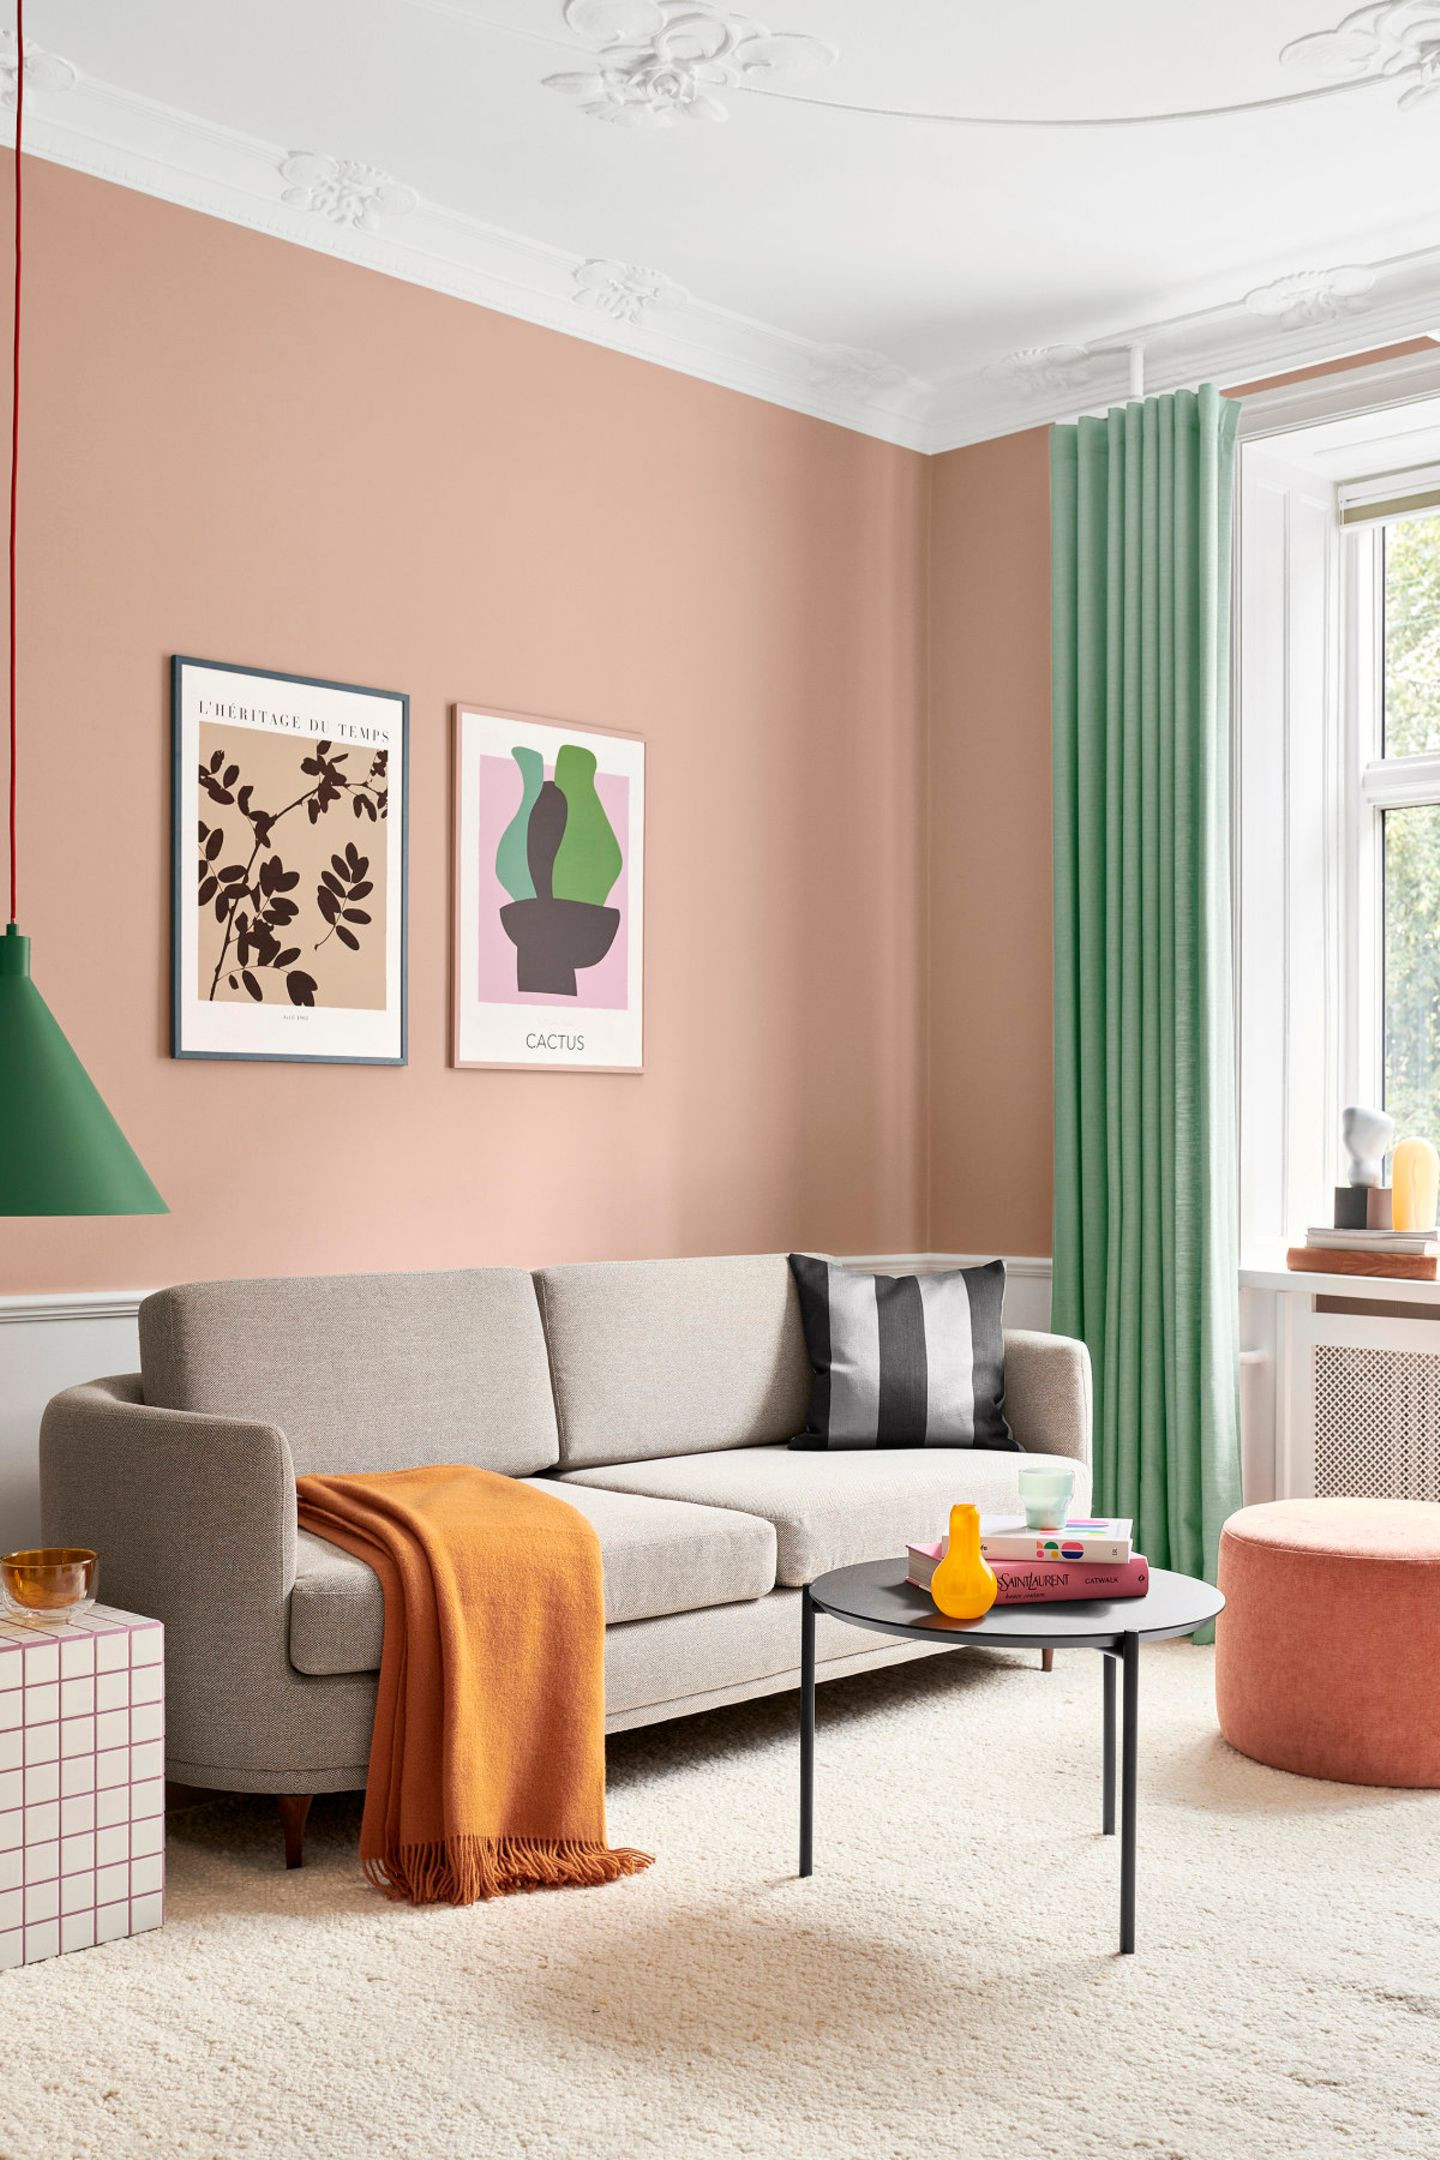 Wohnzimmer Mit Pfirsichfarbener Wand - [Schöner Wohnen] for Farbige Wand Wohnzimmer